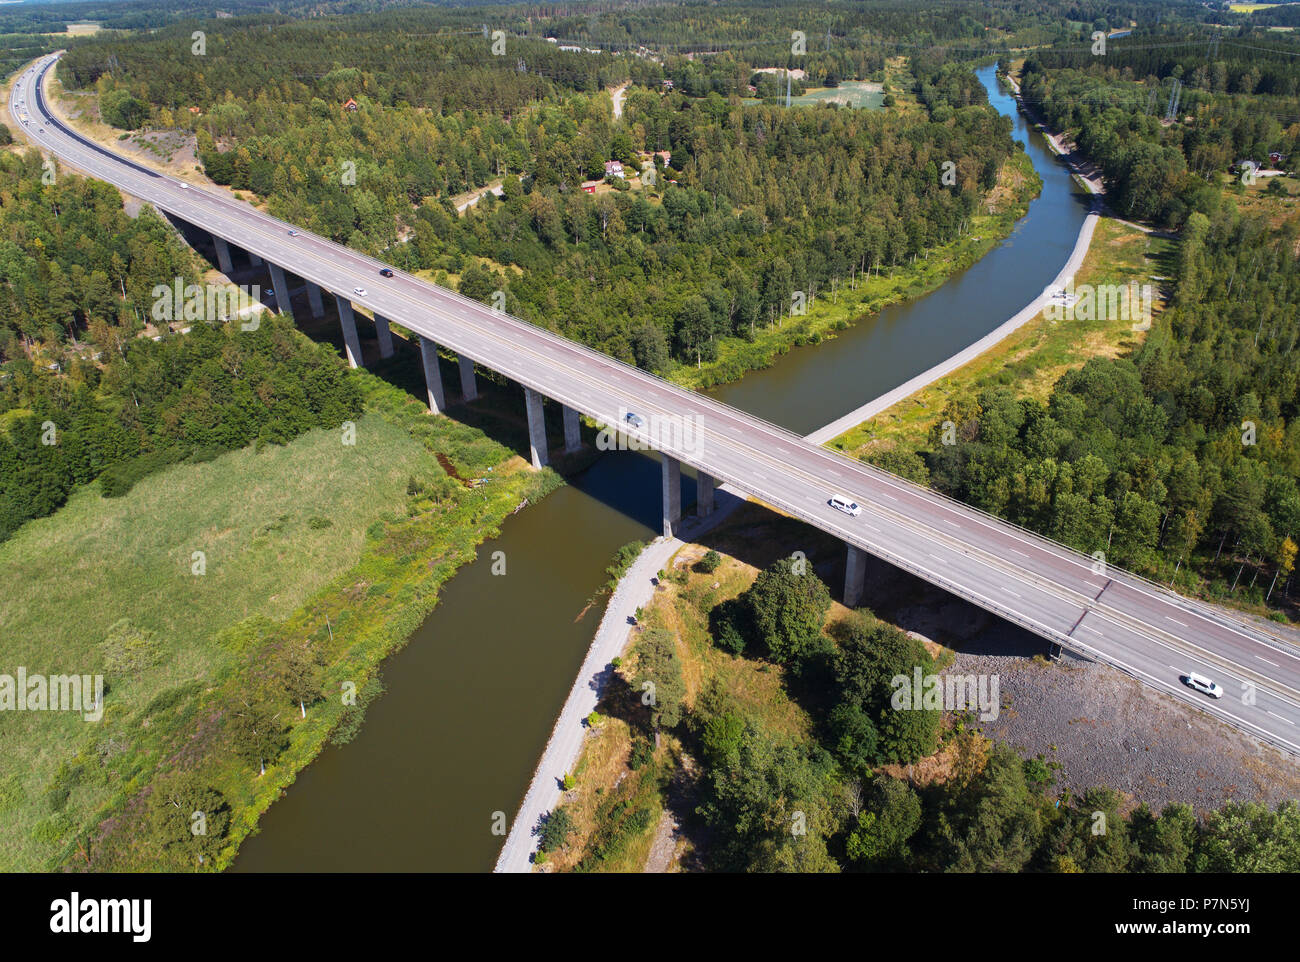 Norsholm, Svezia - Luglio 5, 2018: vista aerea del ponte di Norholm (348 m di lunghezza, 22 m di altezza) con la superstrada E4 attraversando la Gota canal. Foto Stock